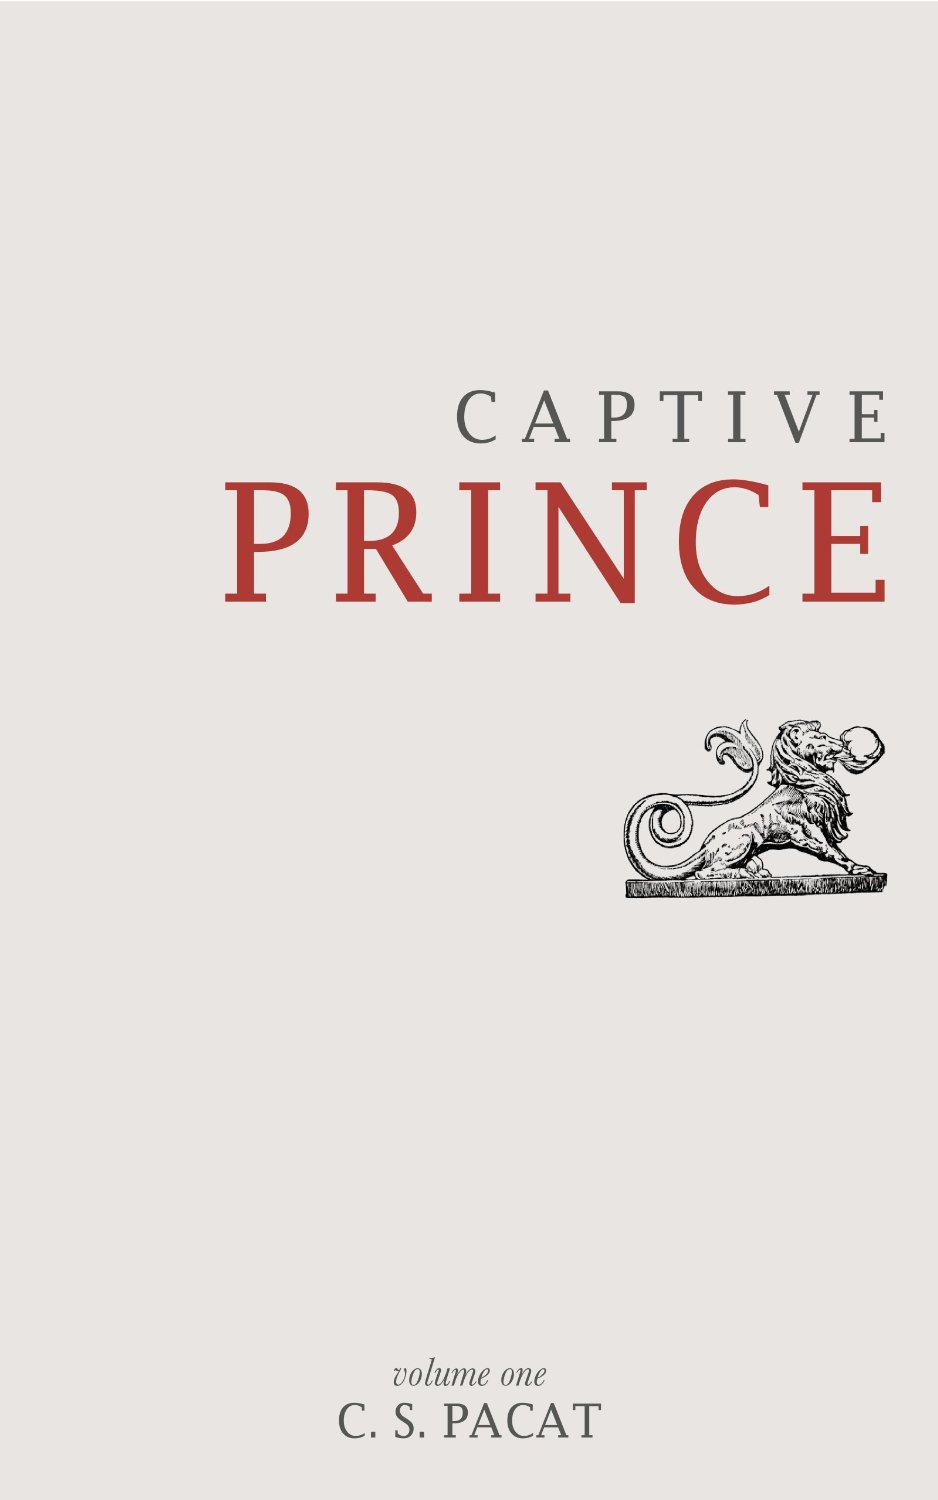 captive prince volume 1 pdf